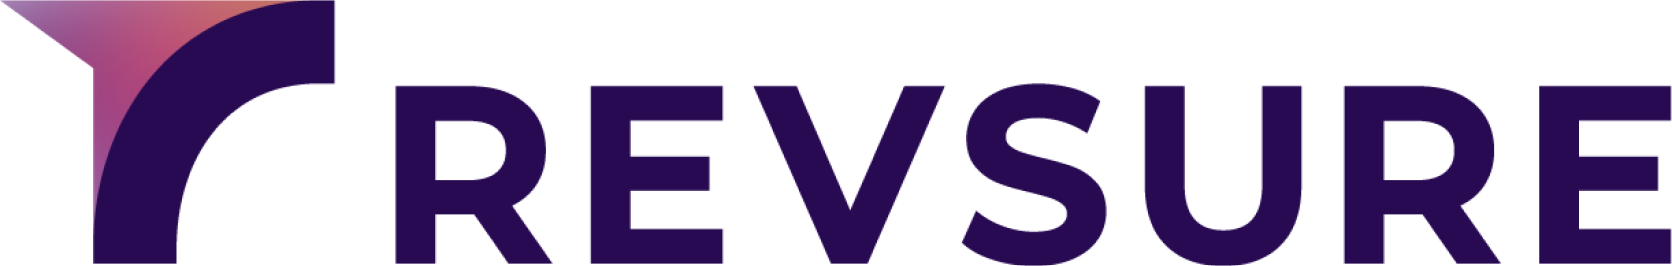 RevSure Logo - Color - No spacing